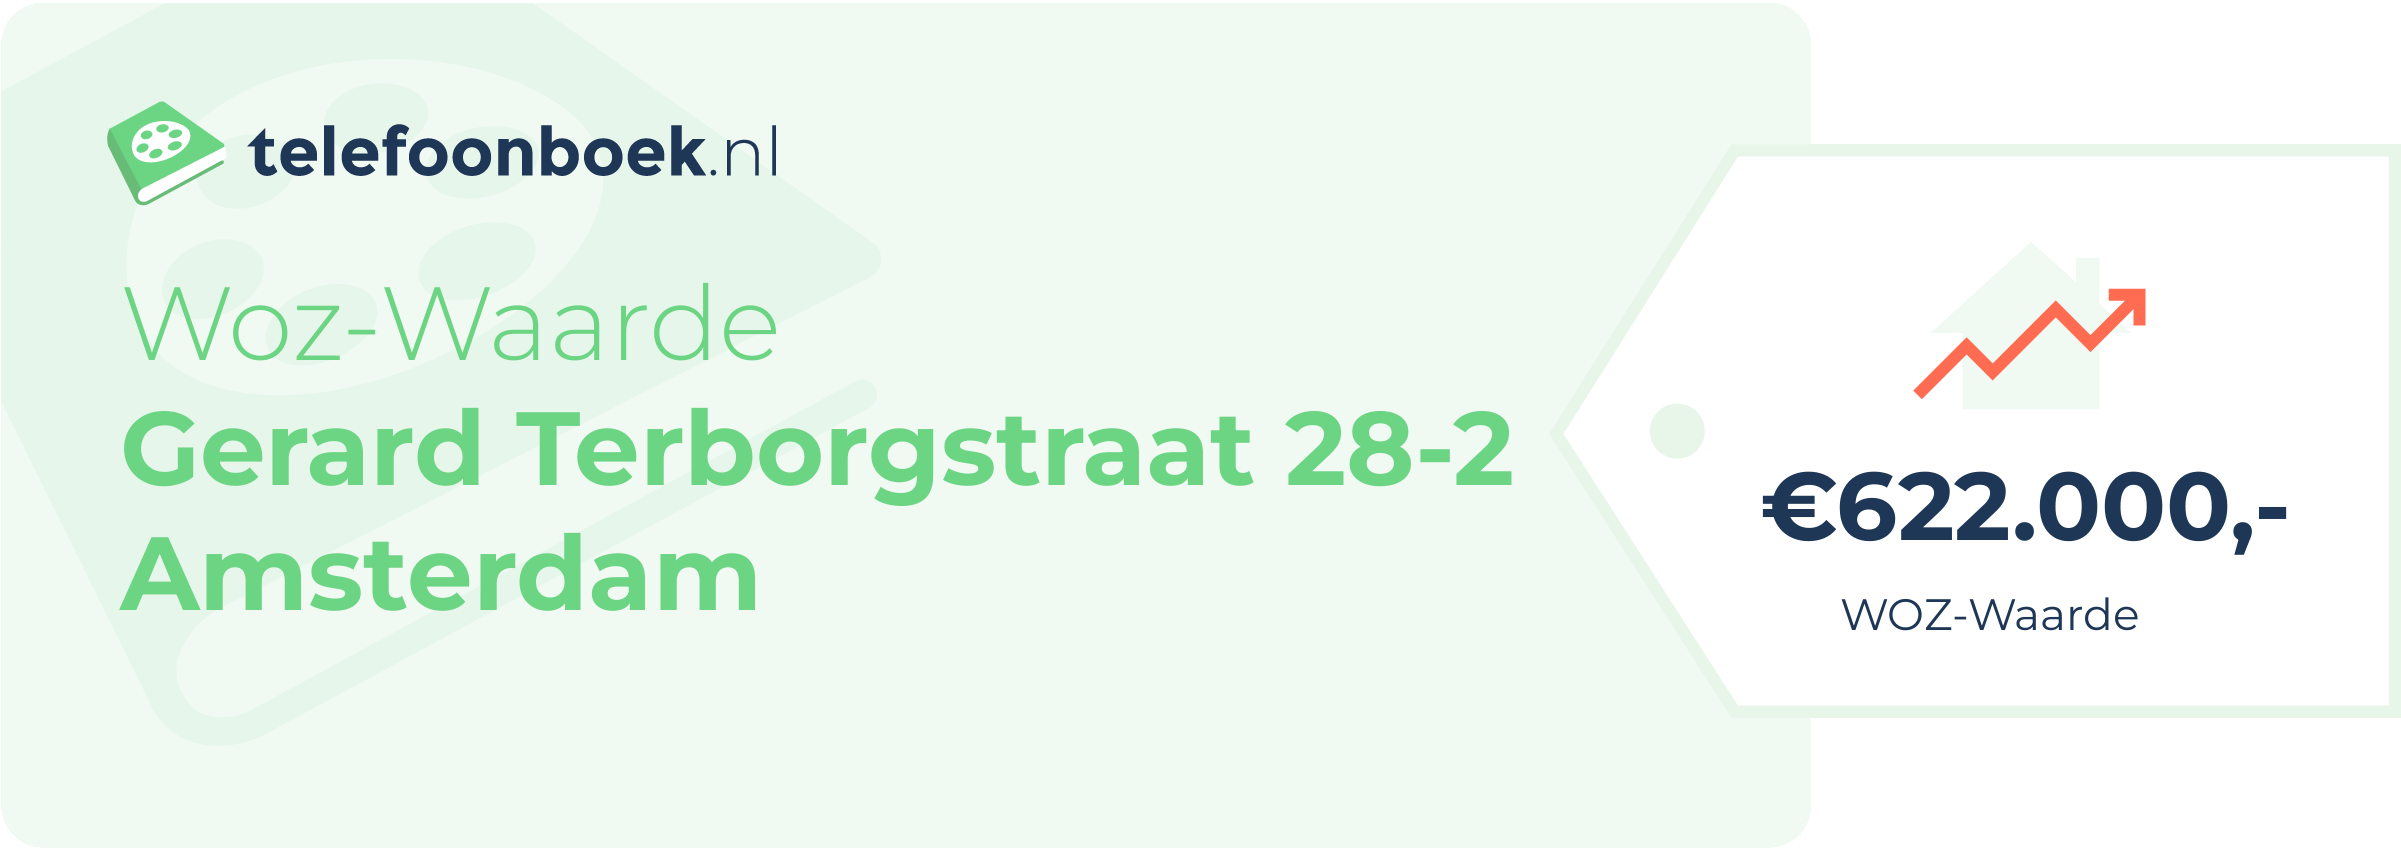 WOZ-waarde Gerard Terborgstraat 28-2 Amsterdam